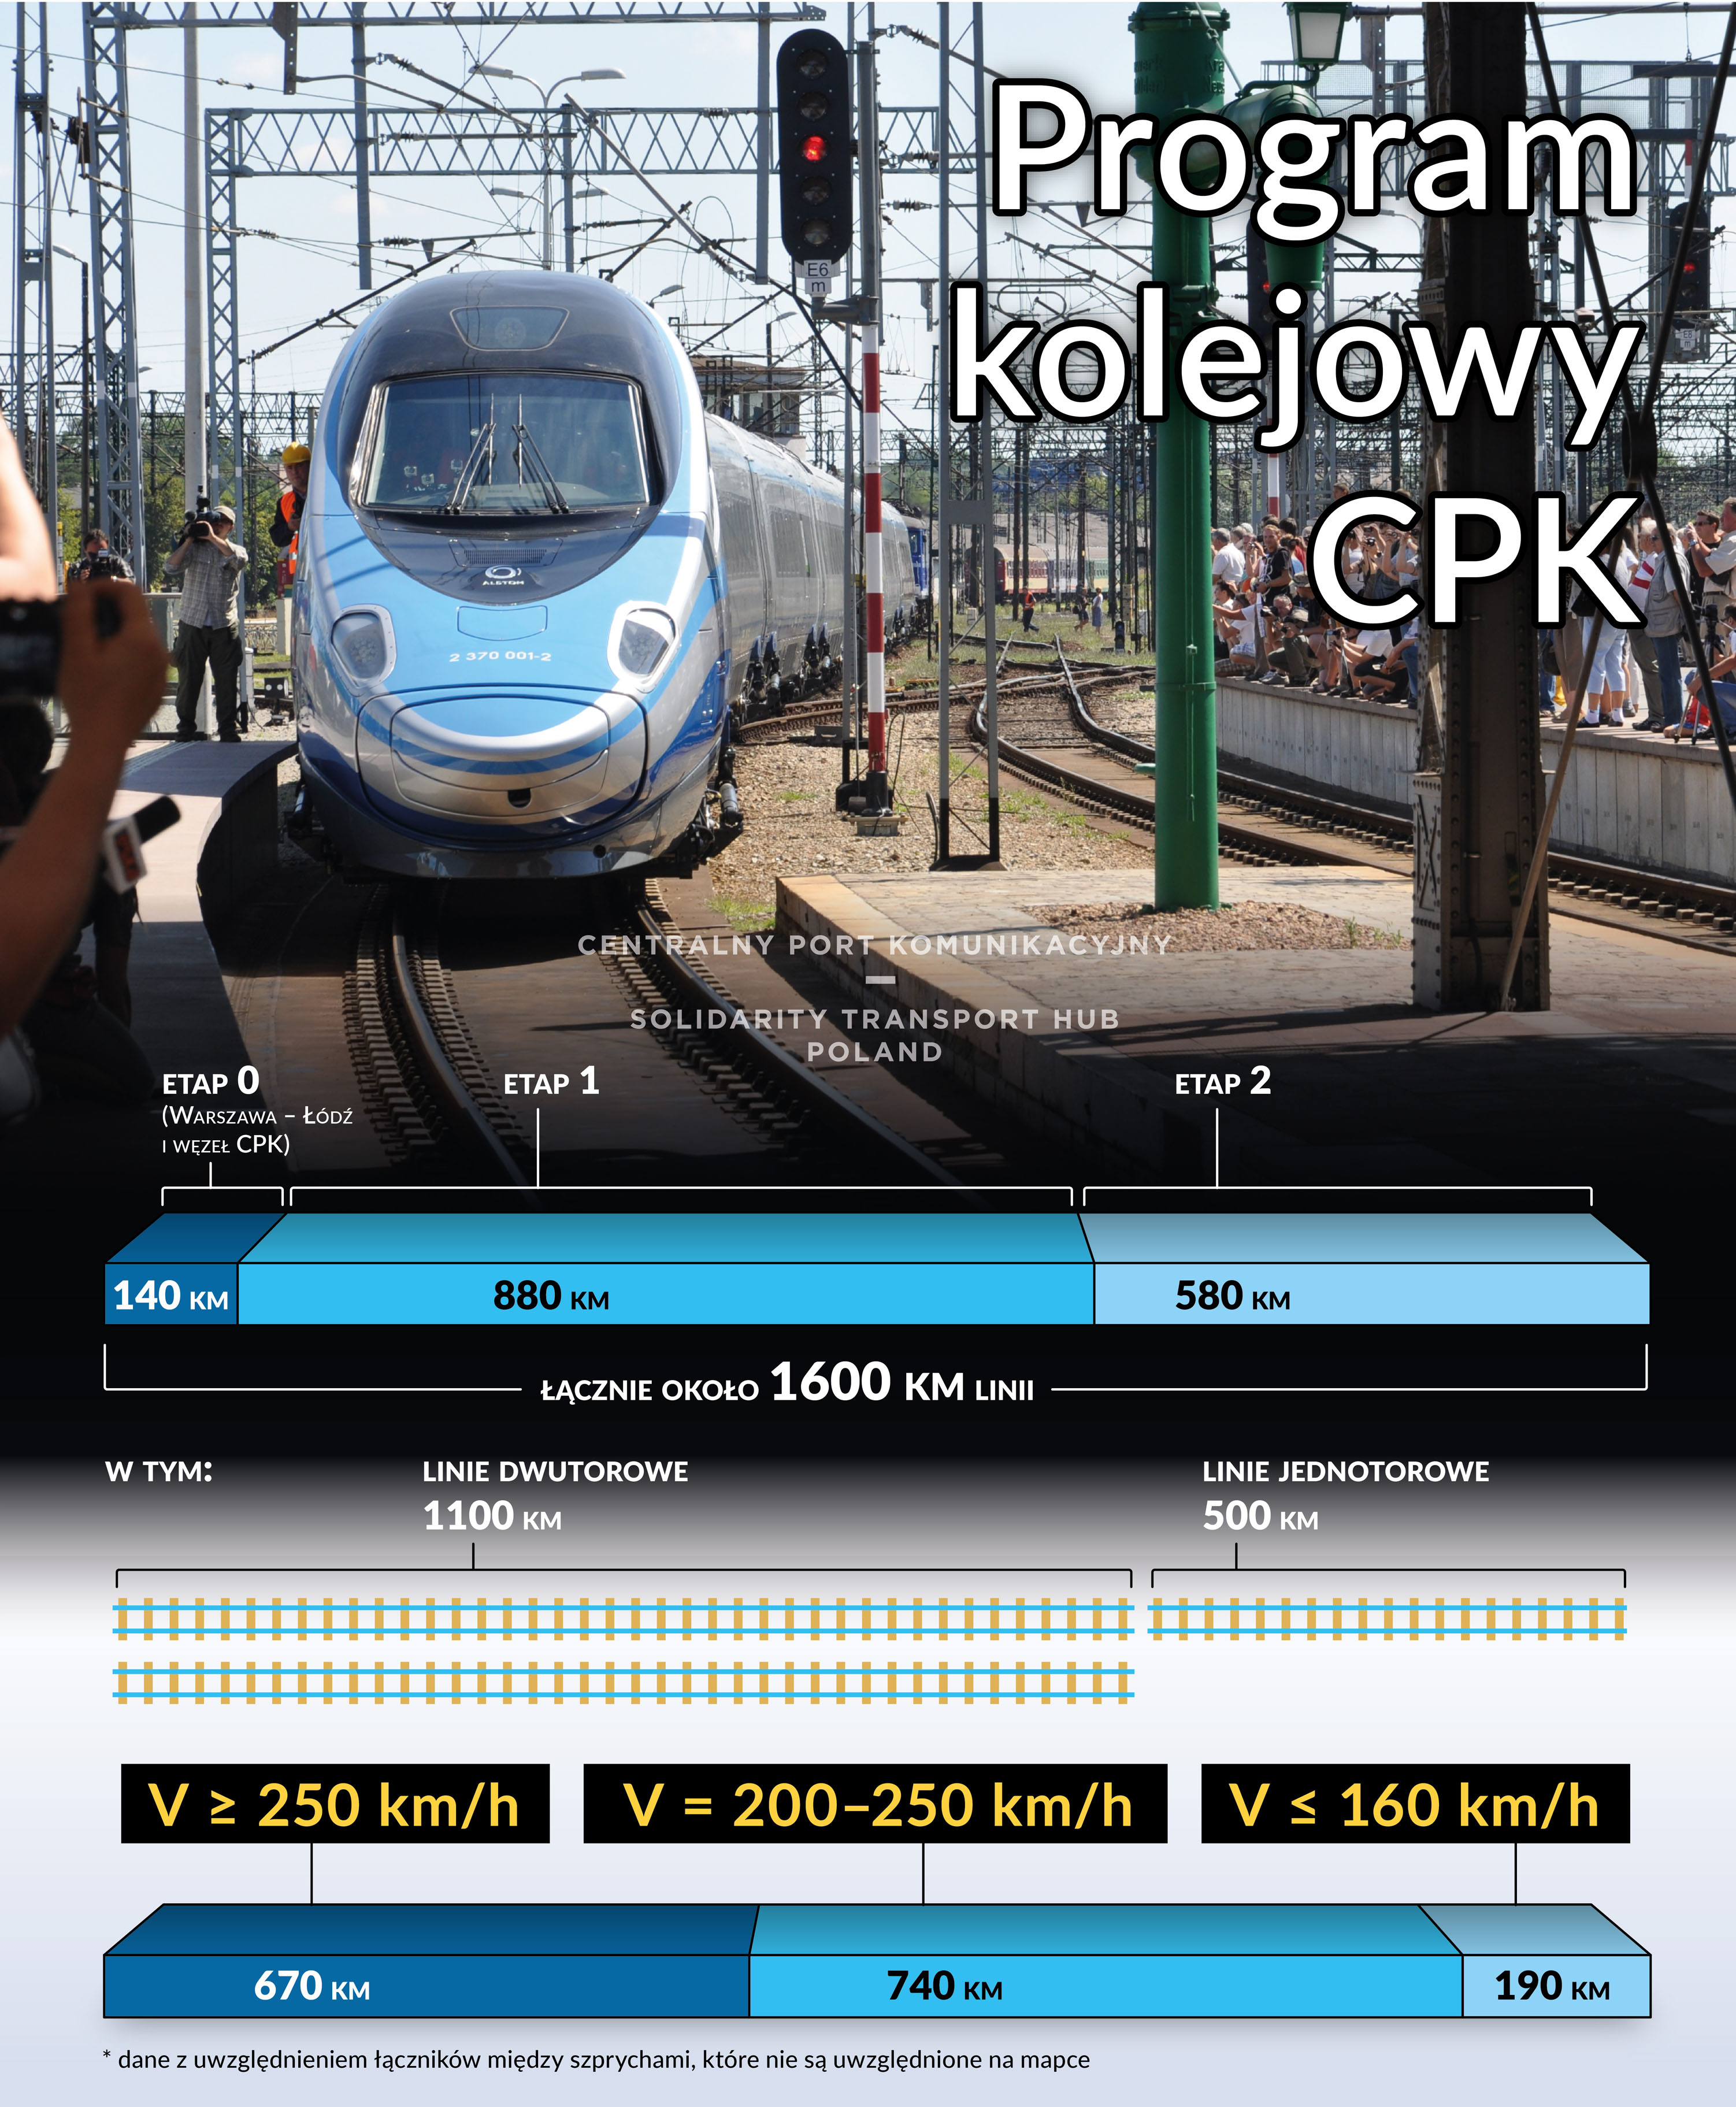 info-cpk-program-kolejowy-km-predkosci-25032019.jpg